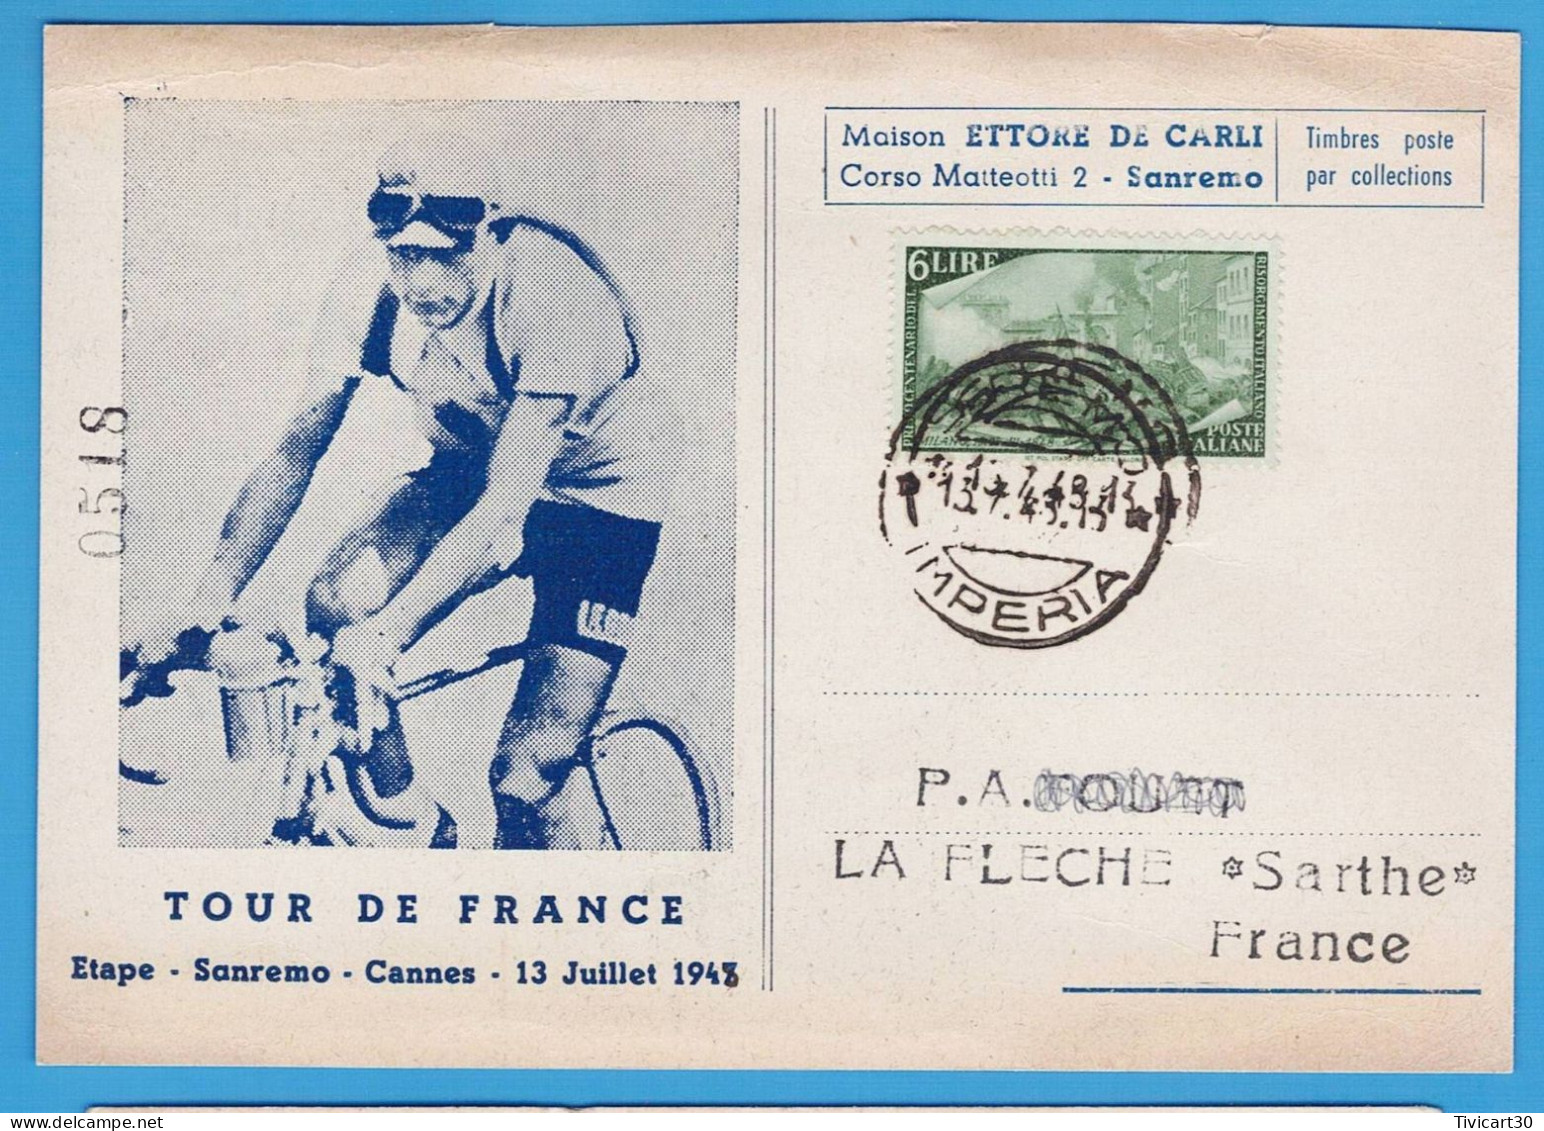 CP CYCLISME - TOUR DE FRANCE 1948 - ETAPE SANREMO (ITALIE) CANNES DU 13 JUILLET 1948 - MAISON ETTORE DE CARLI - Cyclisme